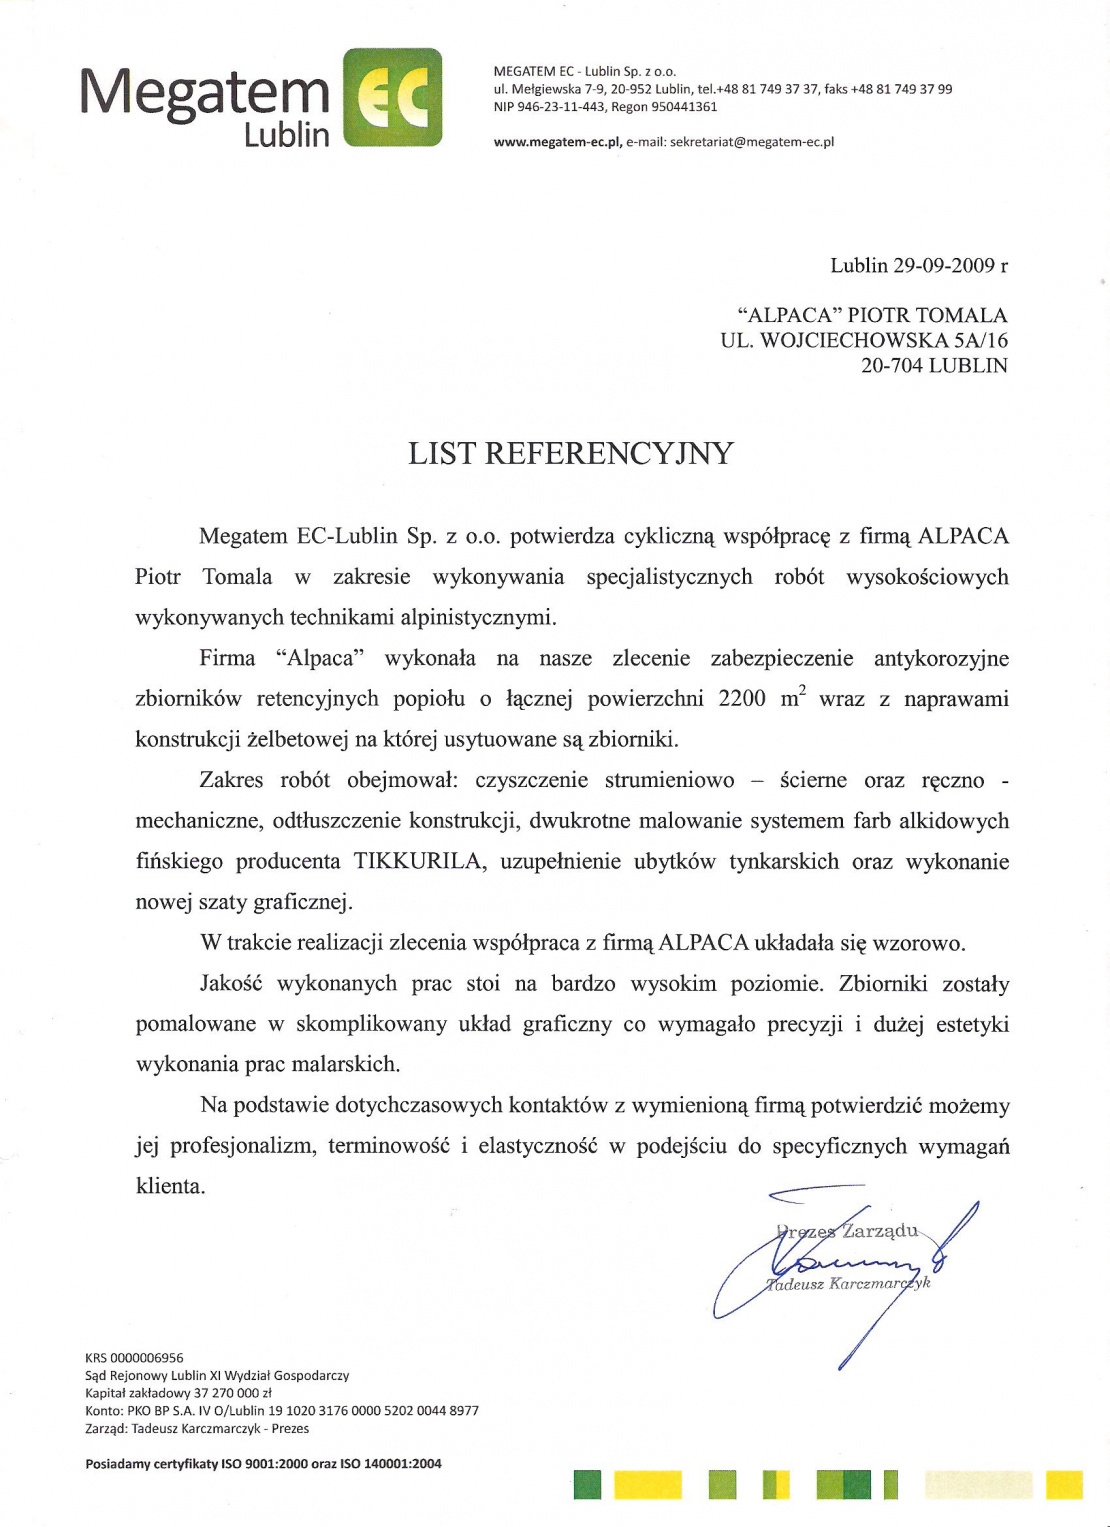 List referencyjny dotyczący zabezpieczenia antykorozyjnego zbiorników retencyjnych popiołu na terenie EC Megatem Lublin..